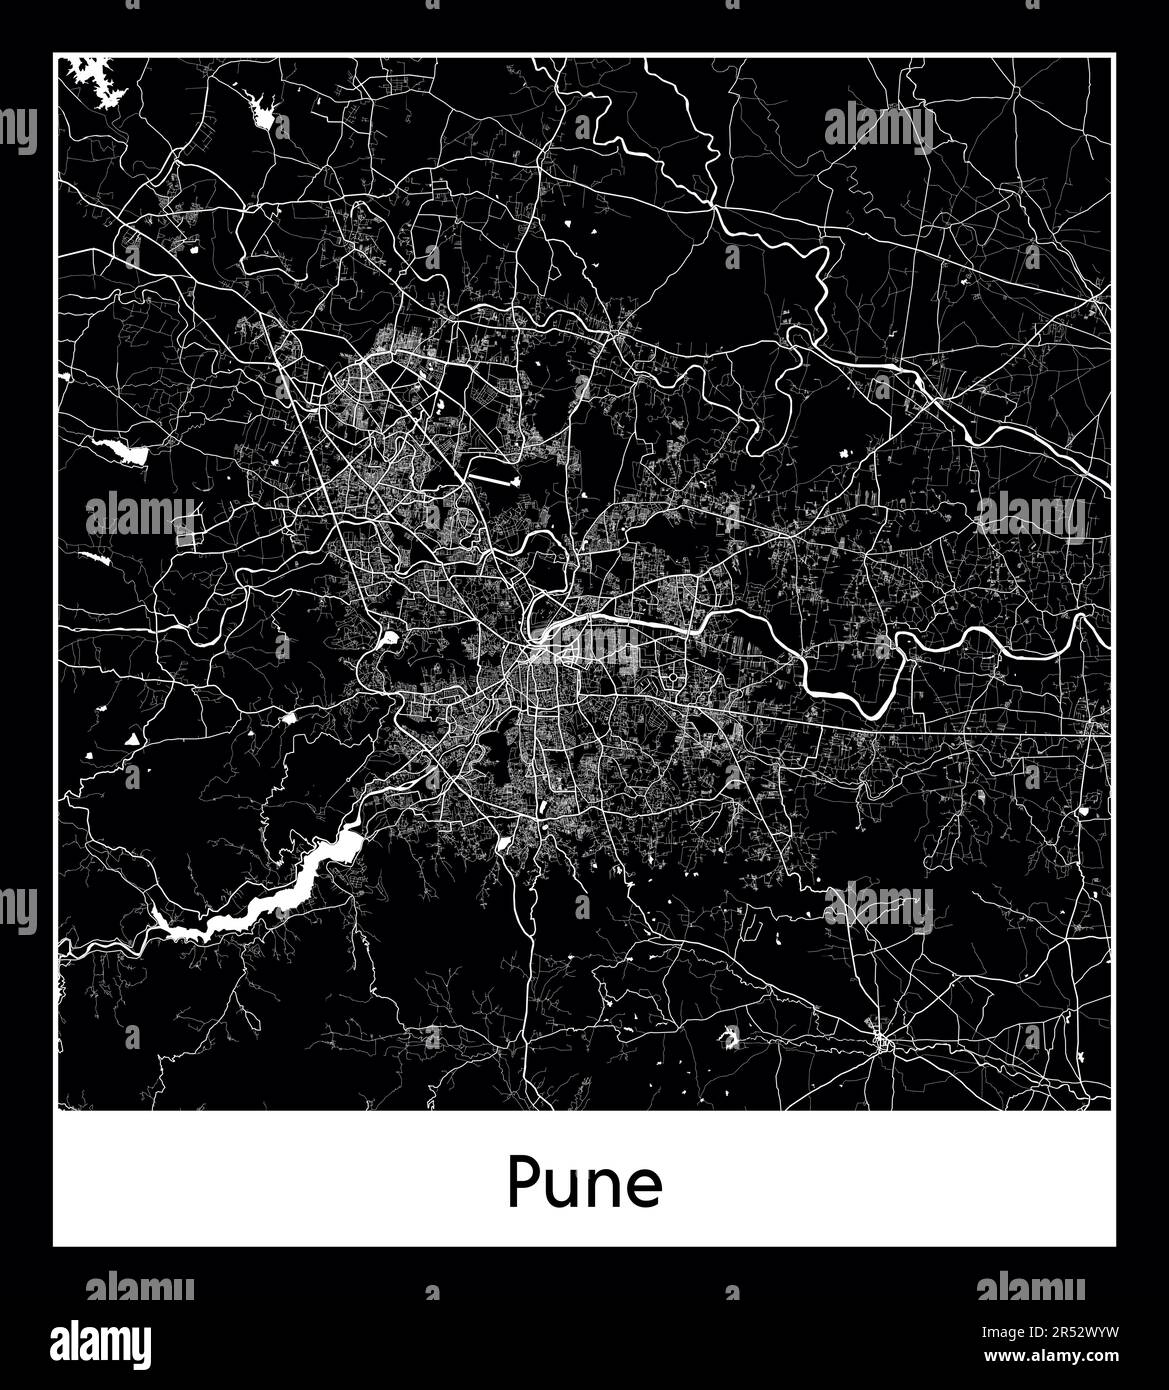 Mappa minima della città di Pune (India Asia)Mappa minima della città di Pune (India Asia) Illustrazione Vettoriale